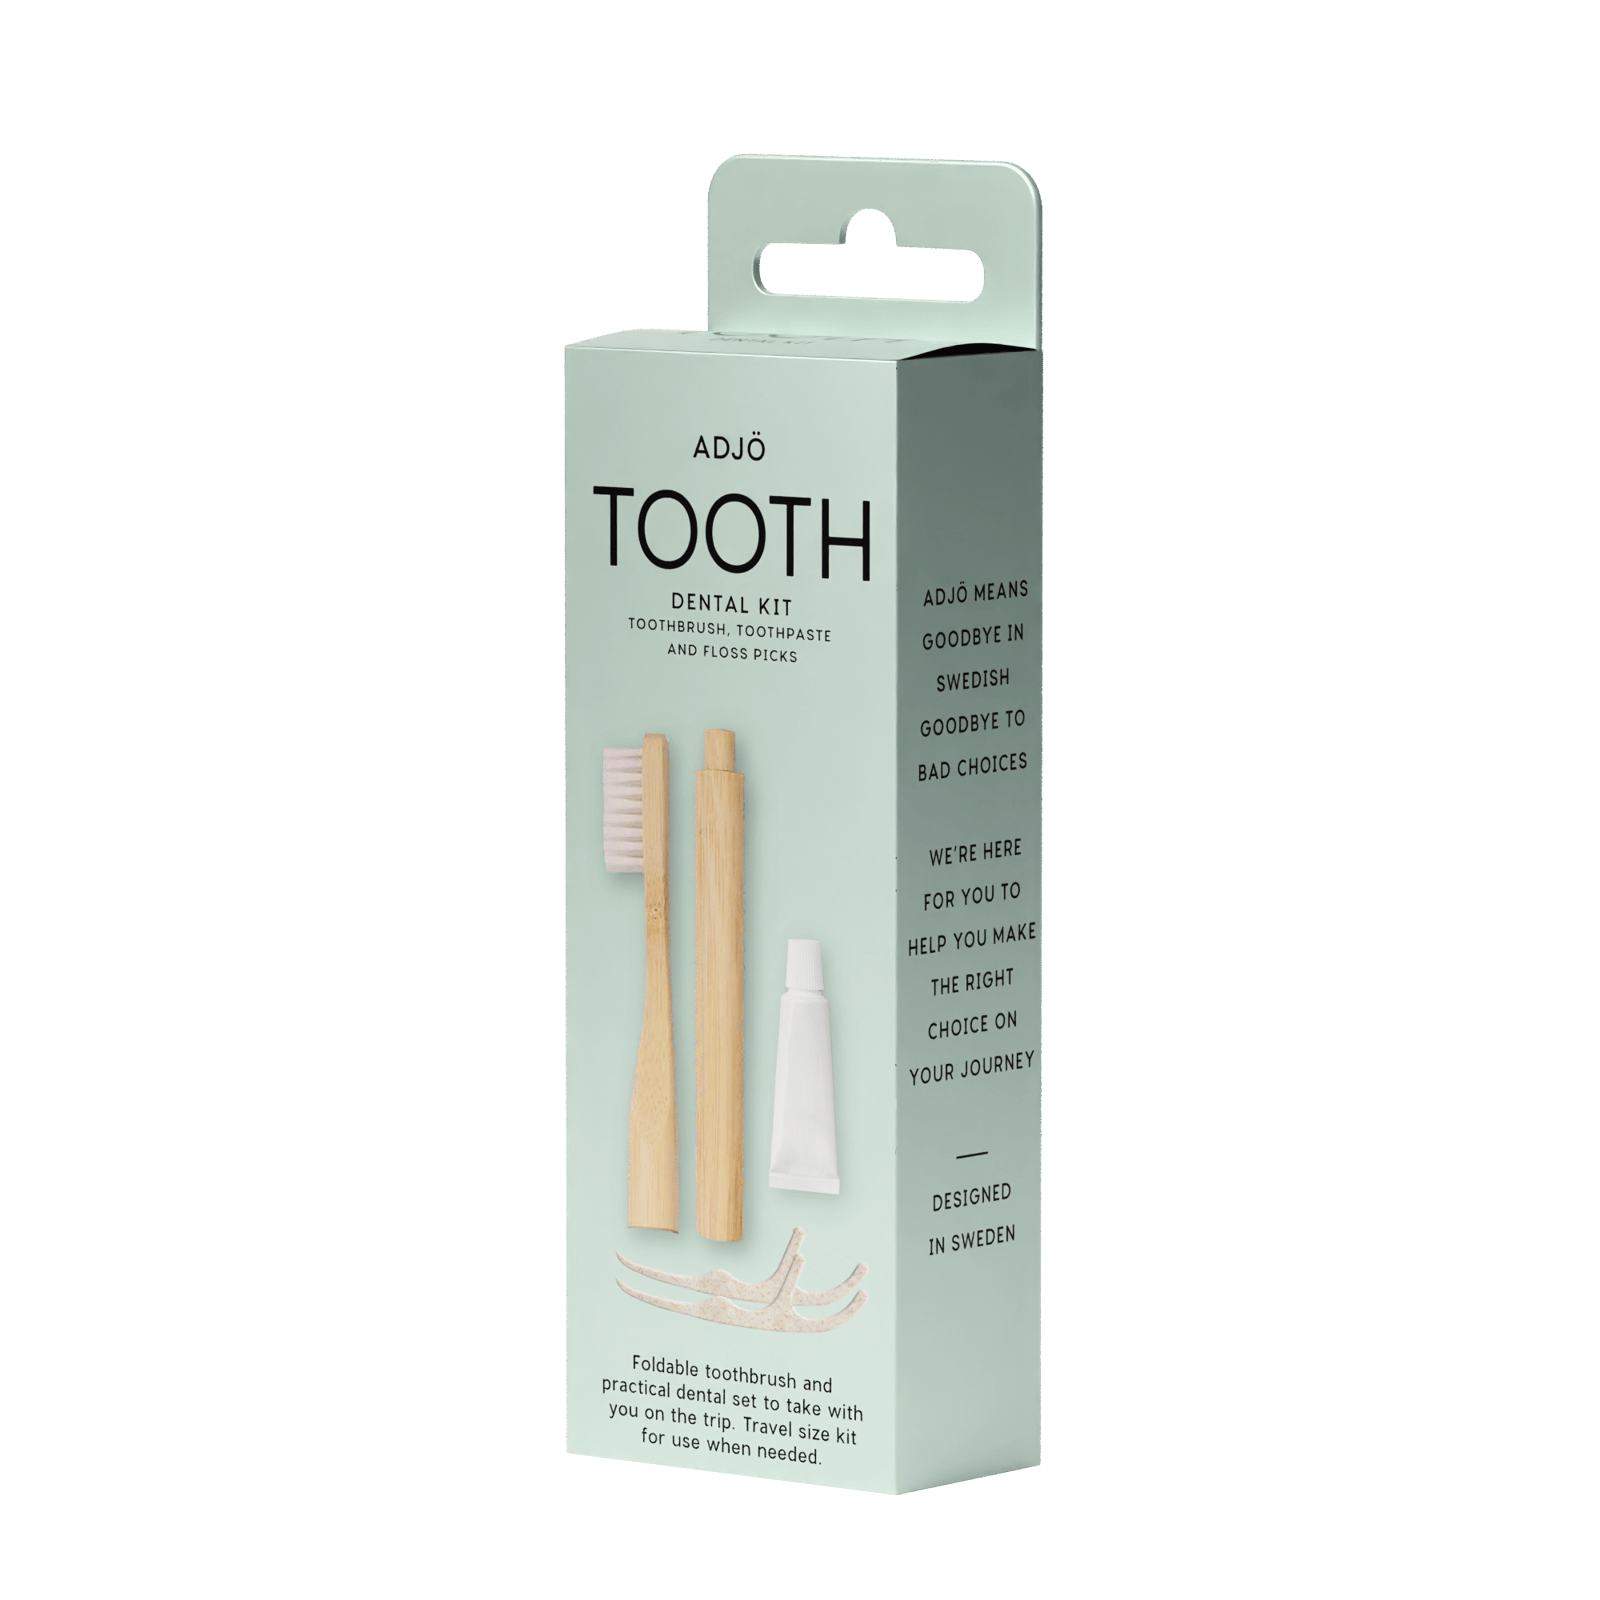 ADJÖ TOOTH Dental Kit